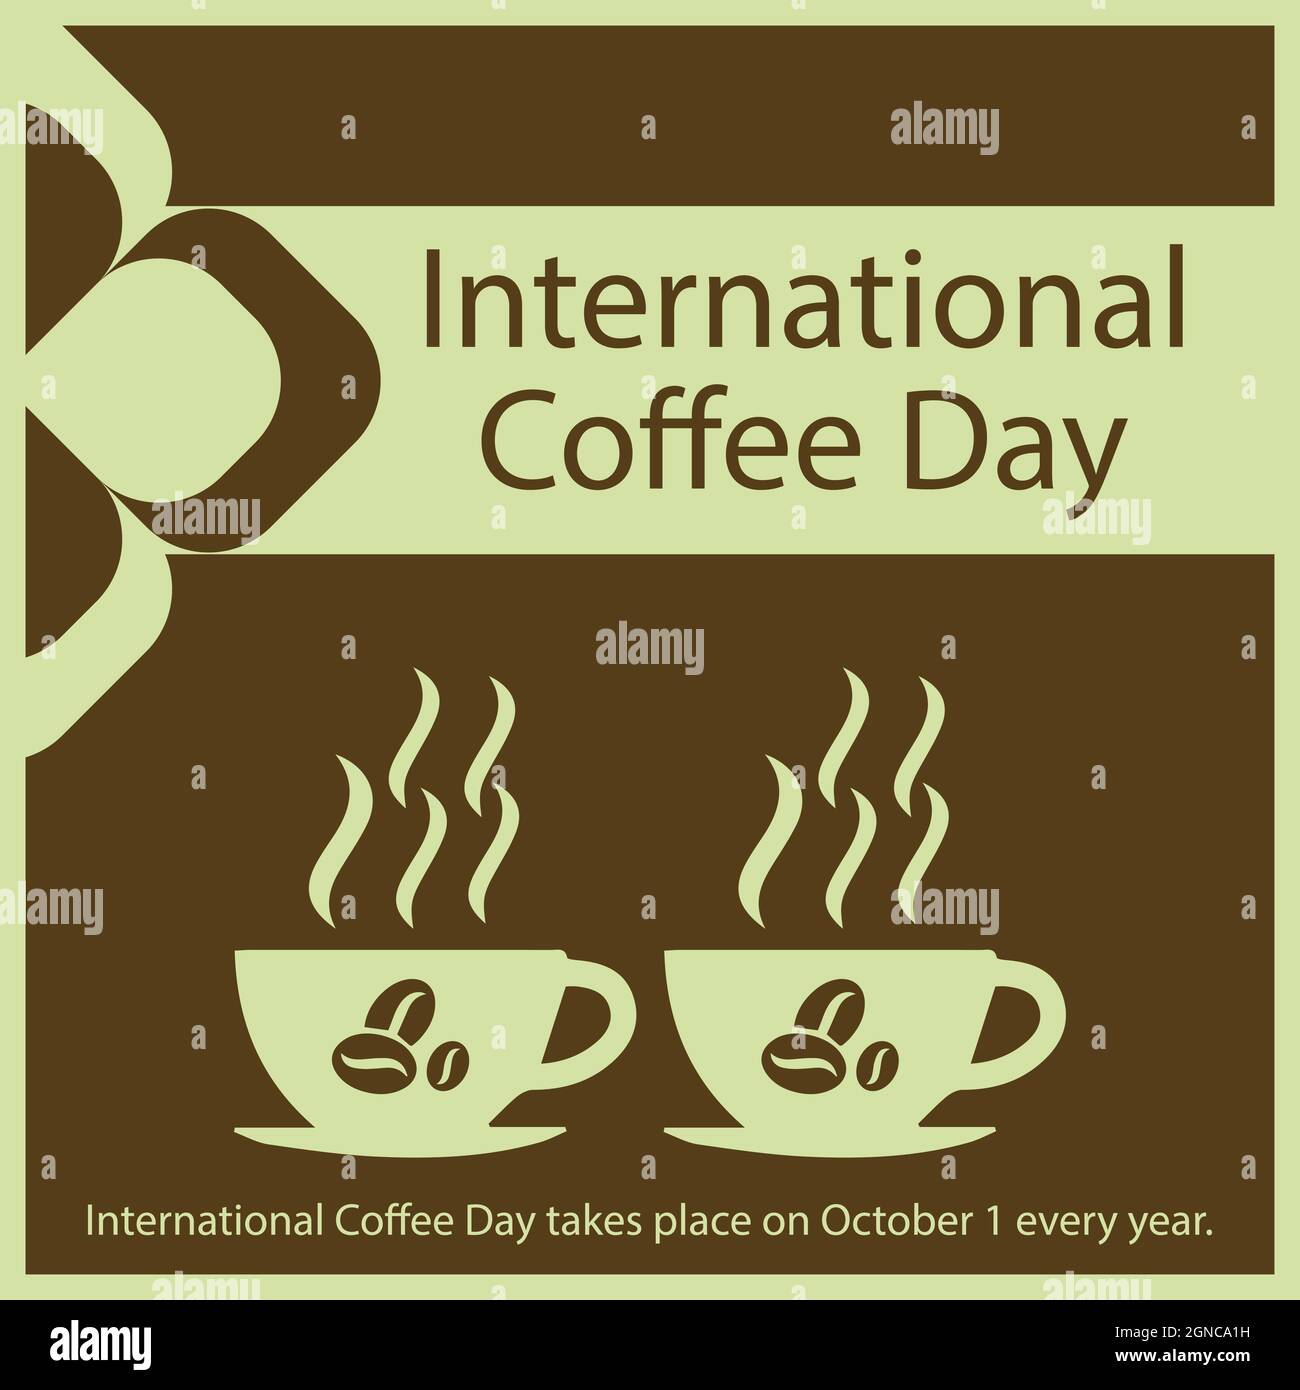 Der Internationale Kaffeetag findet jedes Jahr am 1. Oktober statt. Stock Vektor